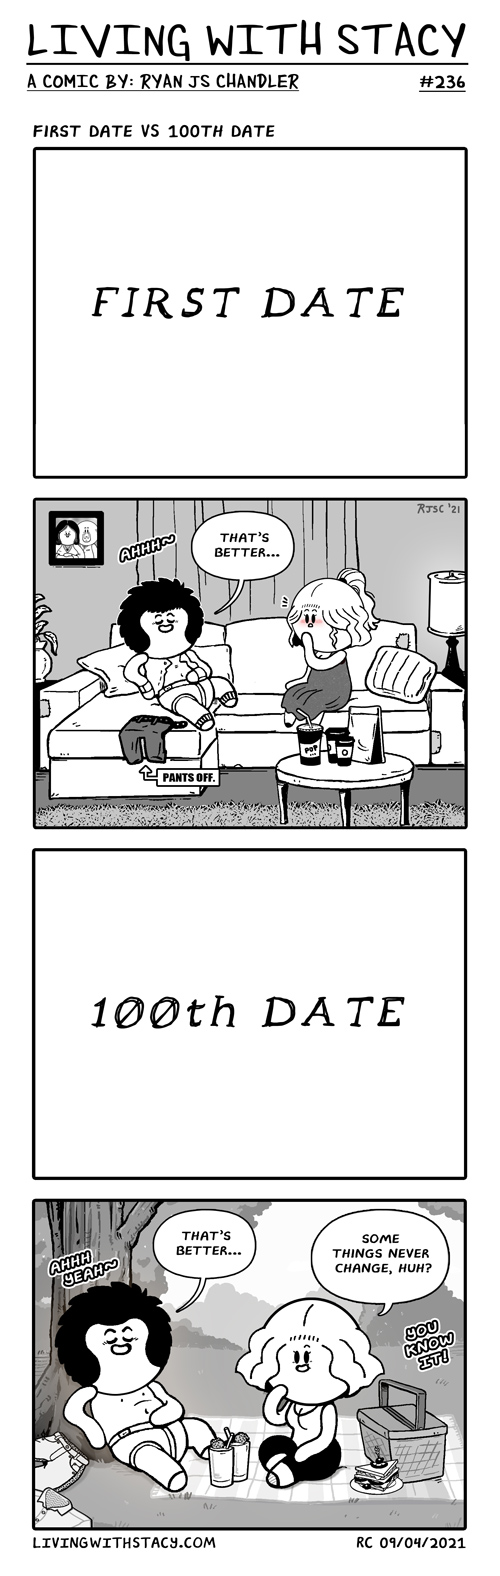 1st Date Vs 100th Date - LWS Comics #236